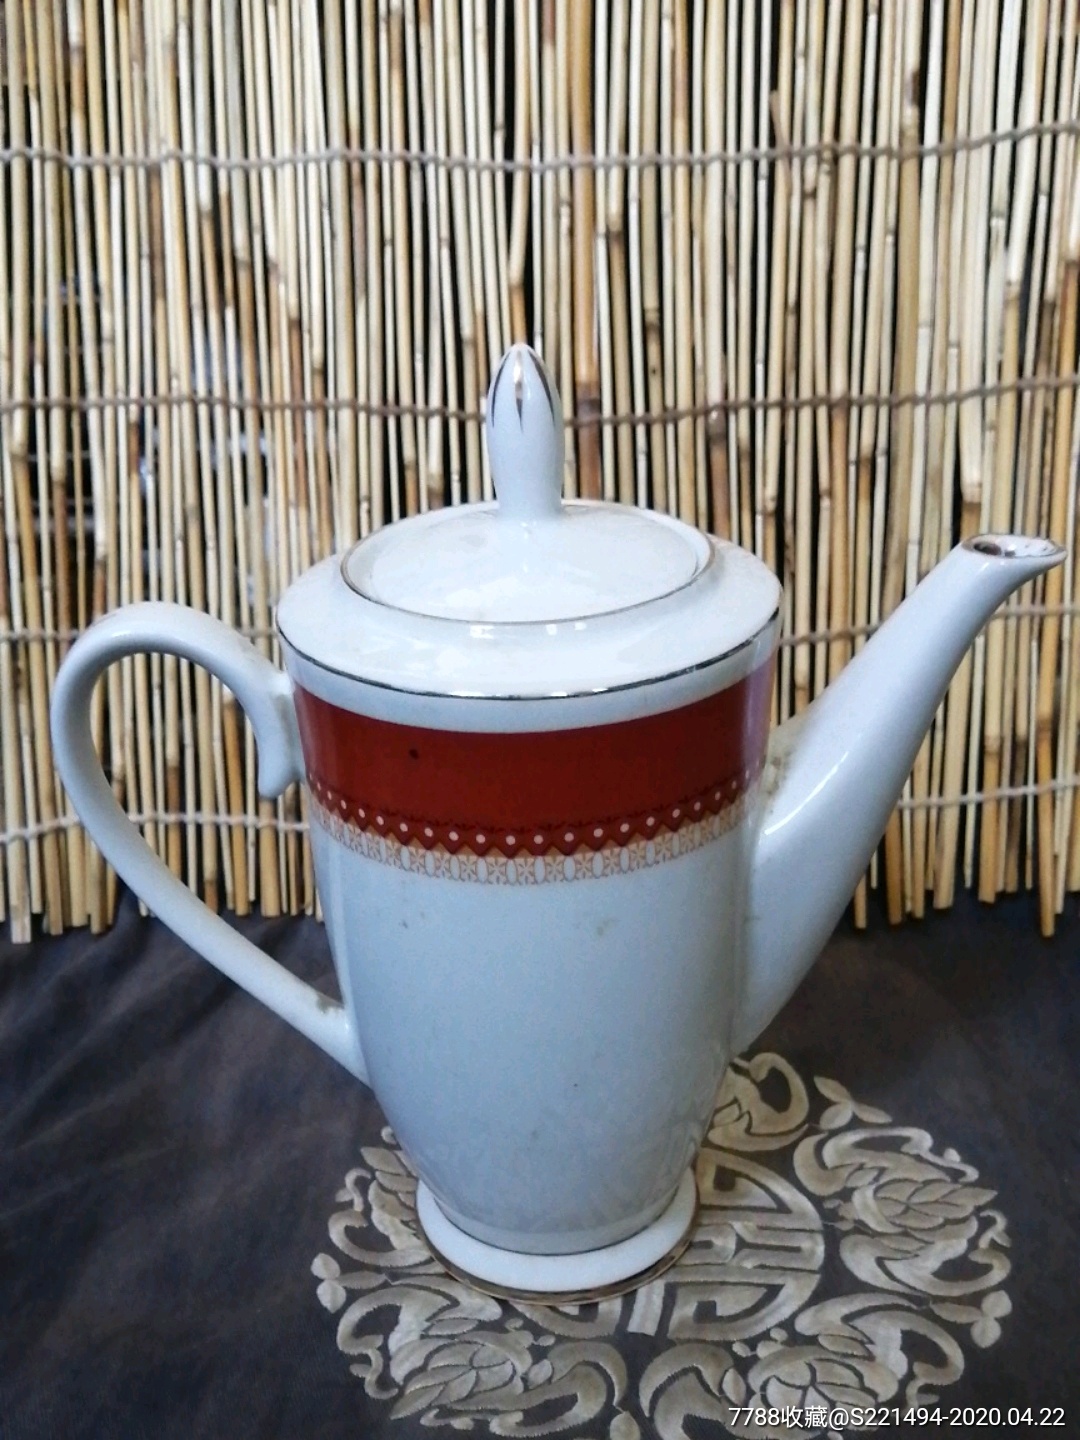 中国博山款出囗创汇期茶壸,茶壶,握把茶壶,八十年代(20世纪),瓷器